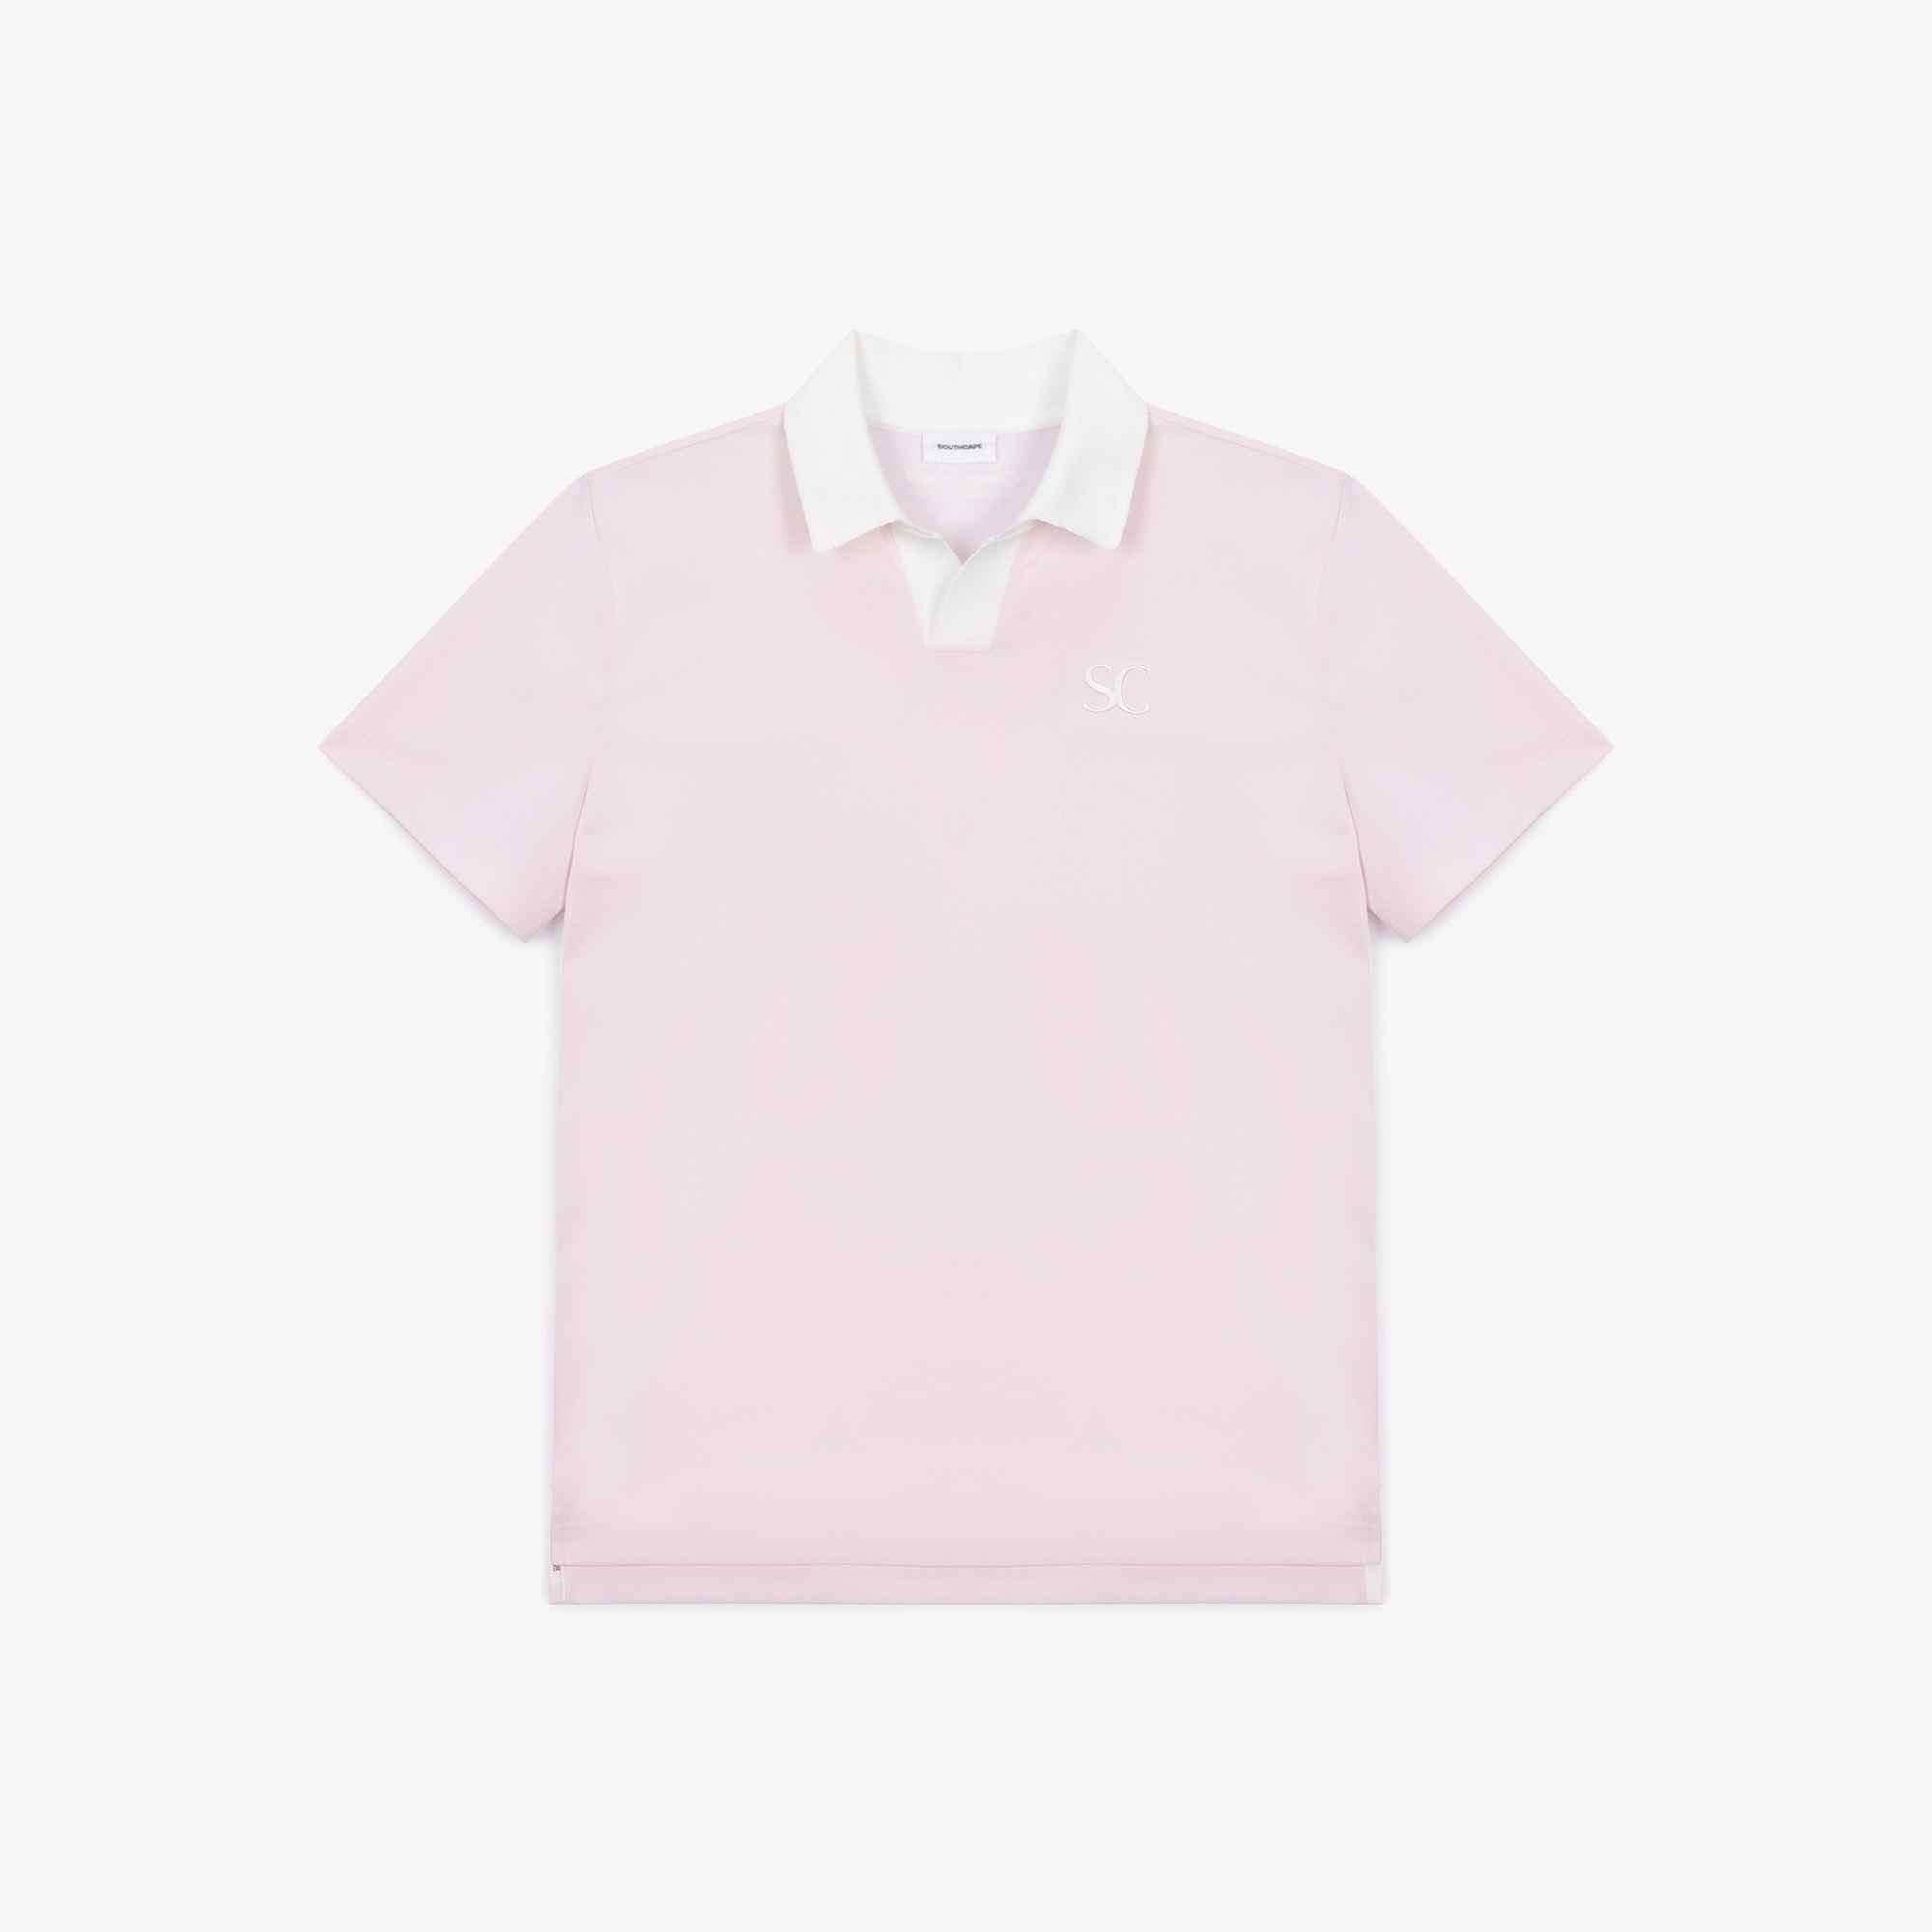 남성 오픈 칼라 반팔 티셔츠_라이트 핑크